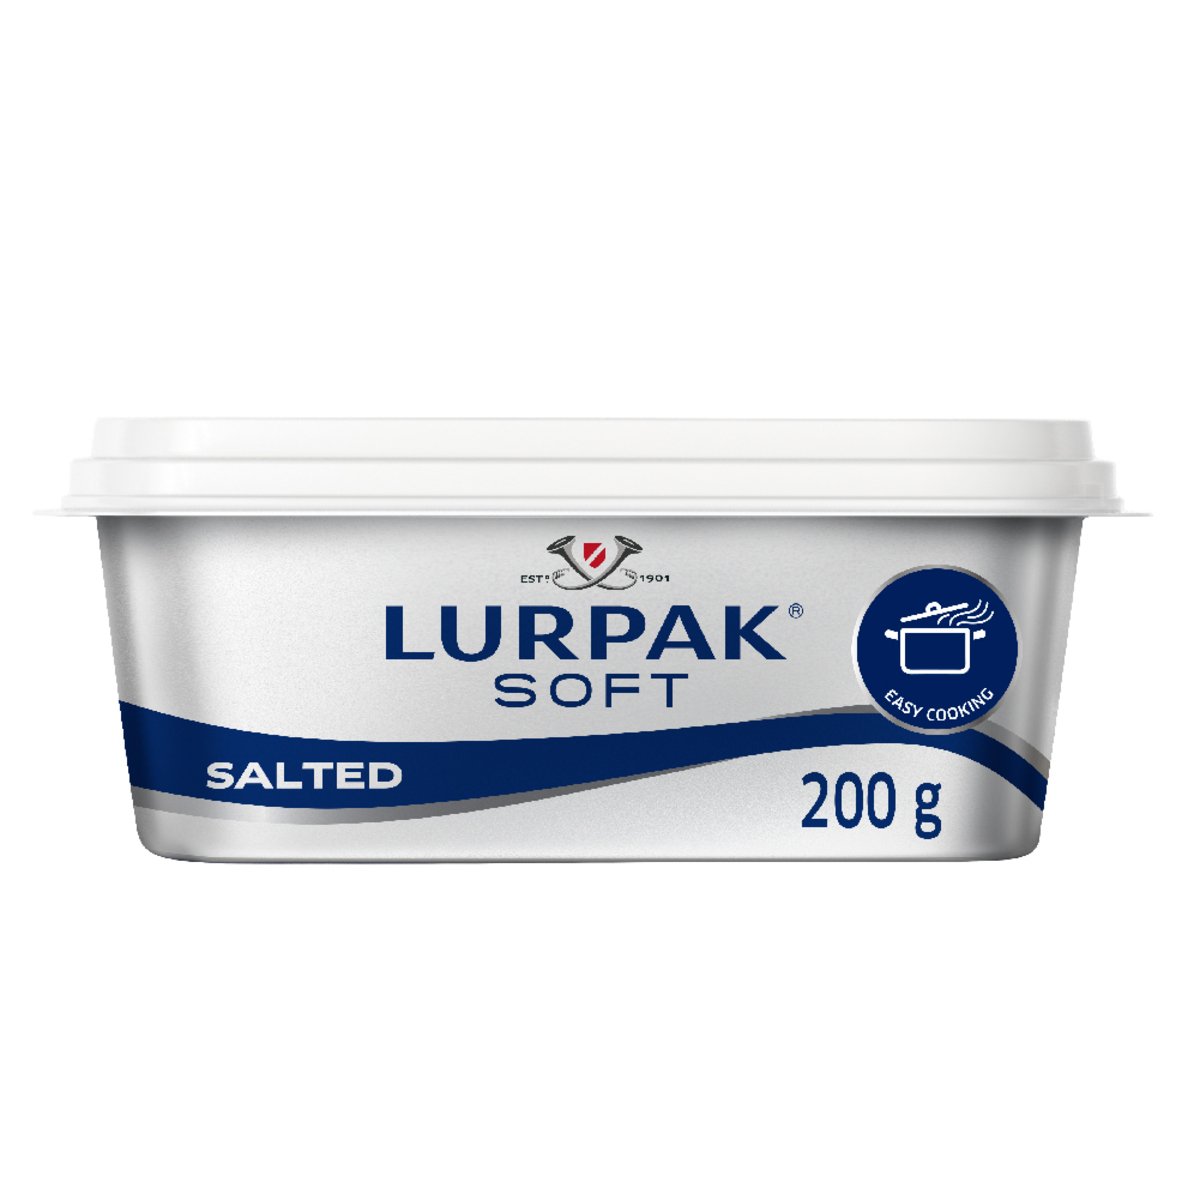 Lurpak Soft Butter Salted 200g